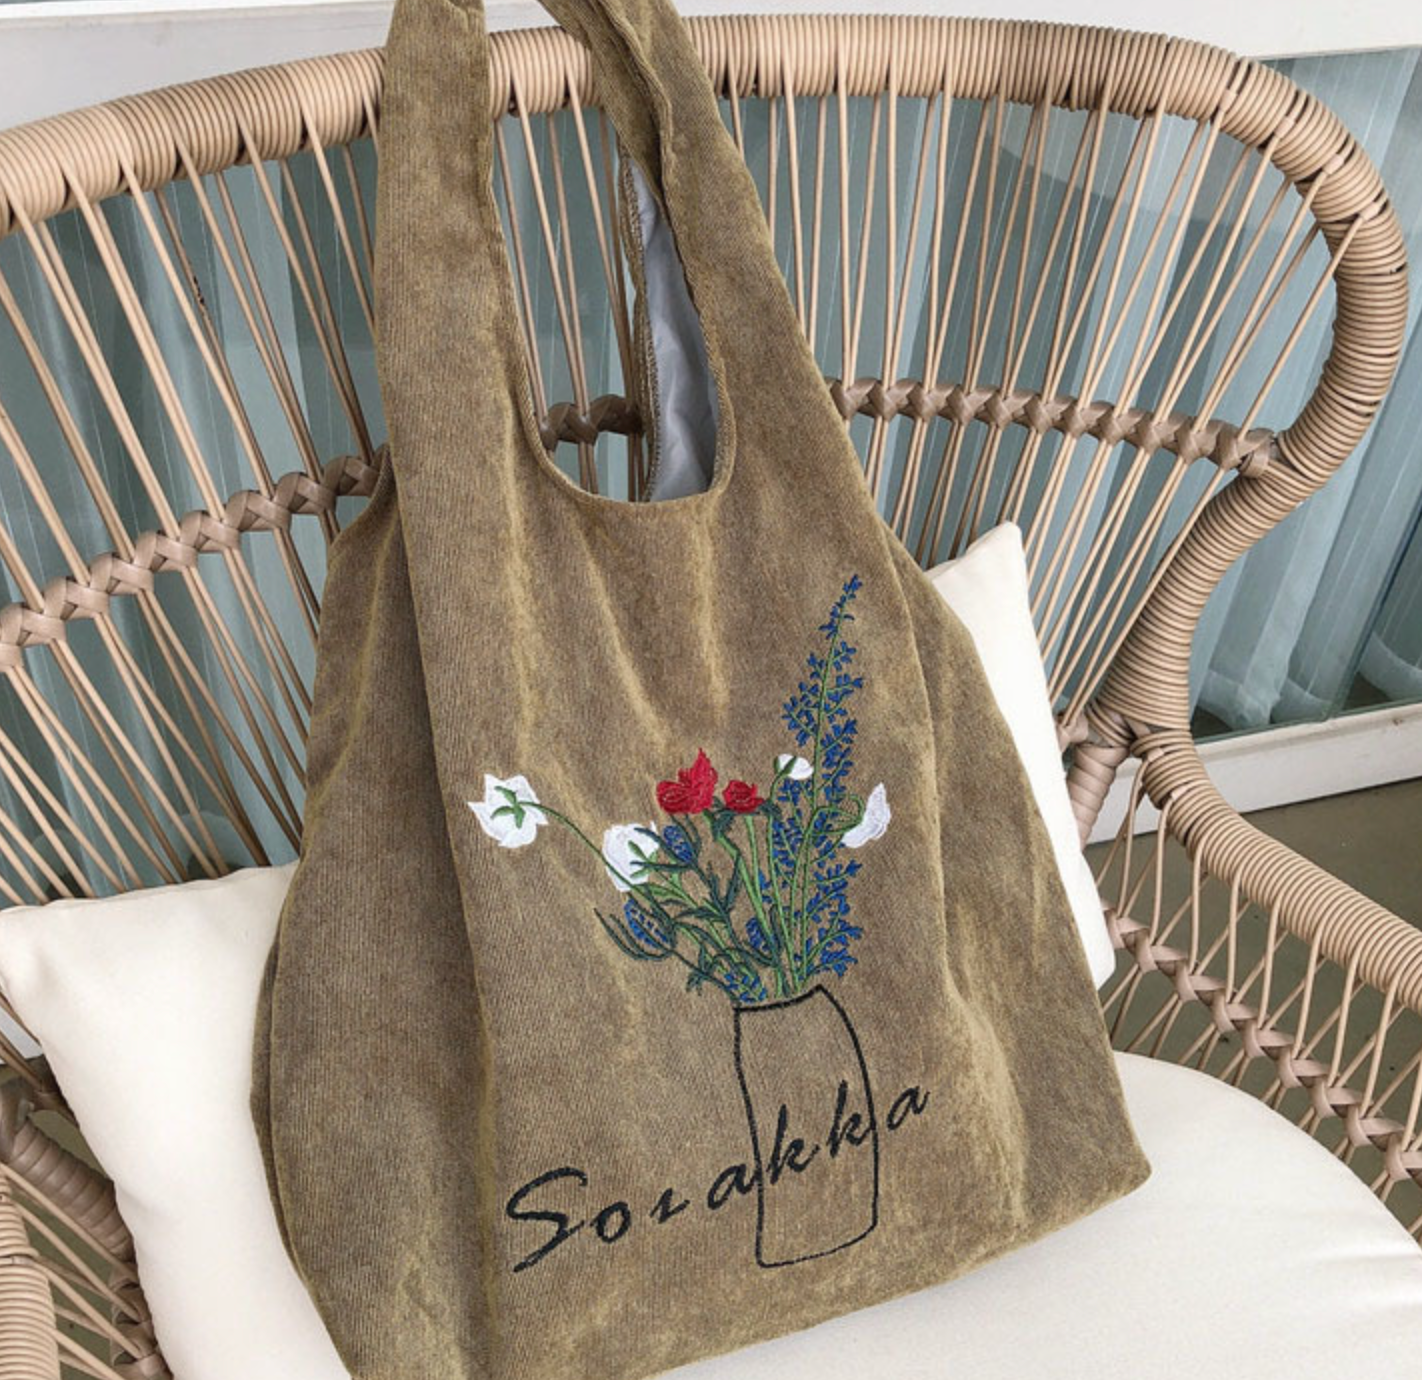 Corduroy Shoulder Bag with Floral Vase Illustration